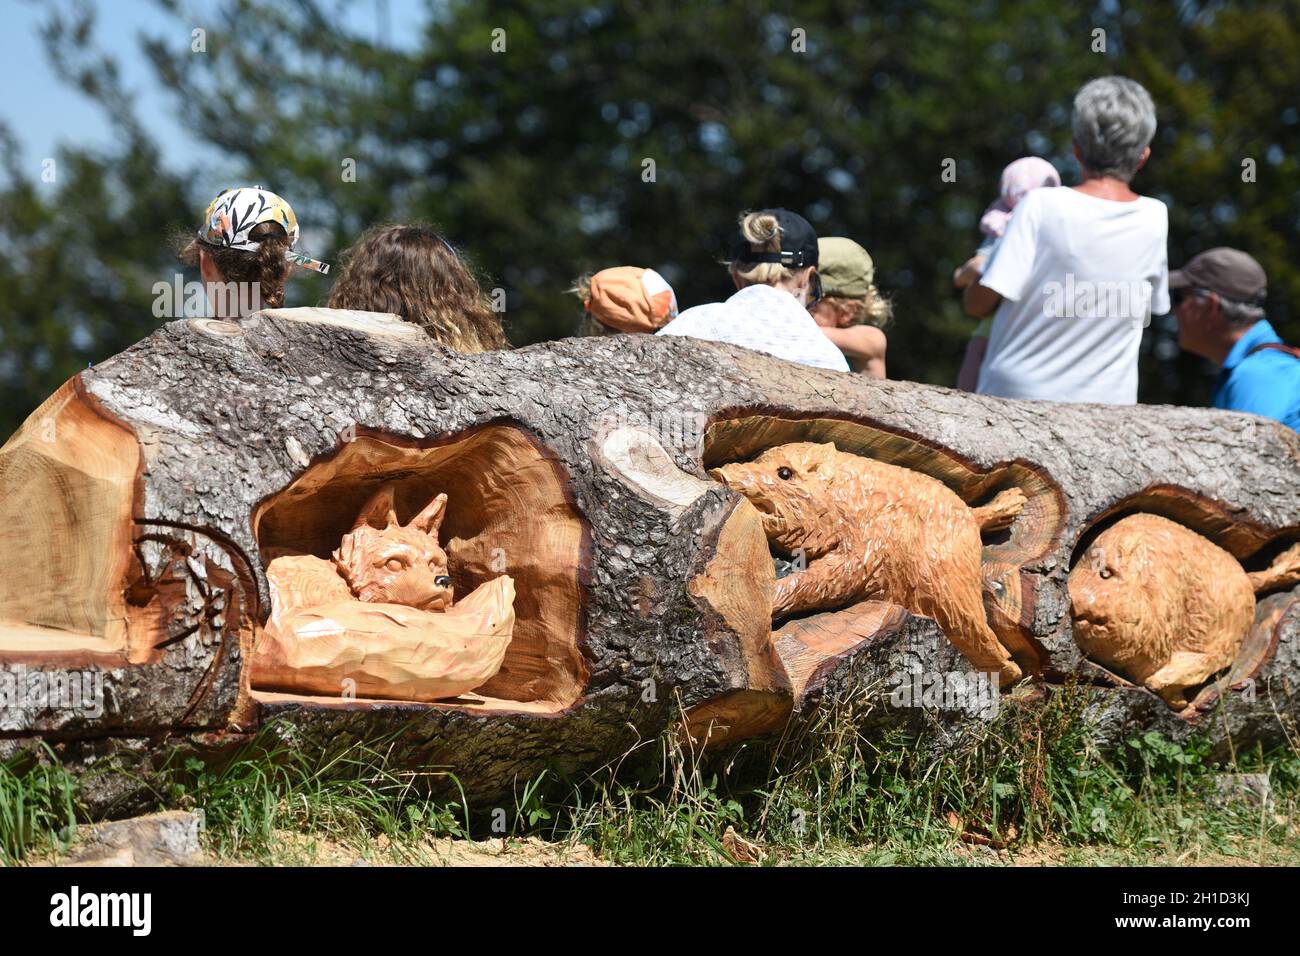 Geschnitzte Wildtiere in einem Baumstamm auf dem Grünberg (Bezirk Gmunden, Oberösterreich, Österreich) - animales salvajes tallados en un tronco de árbol en el Gr Foto de stock